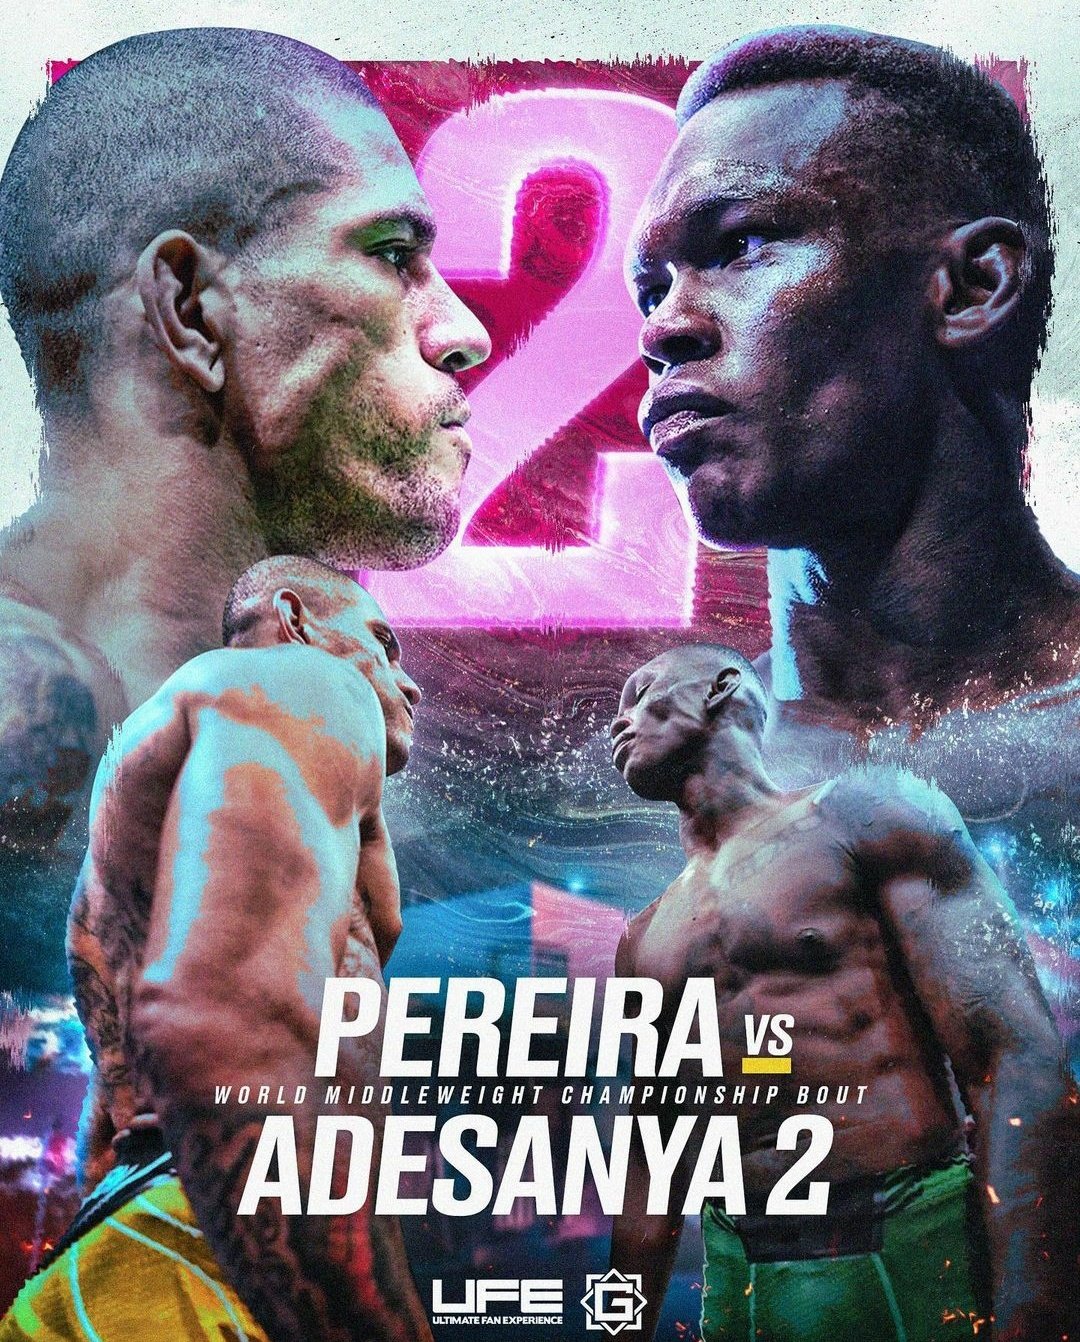 UFC 287 - Miami - Poster et affiche